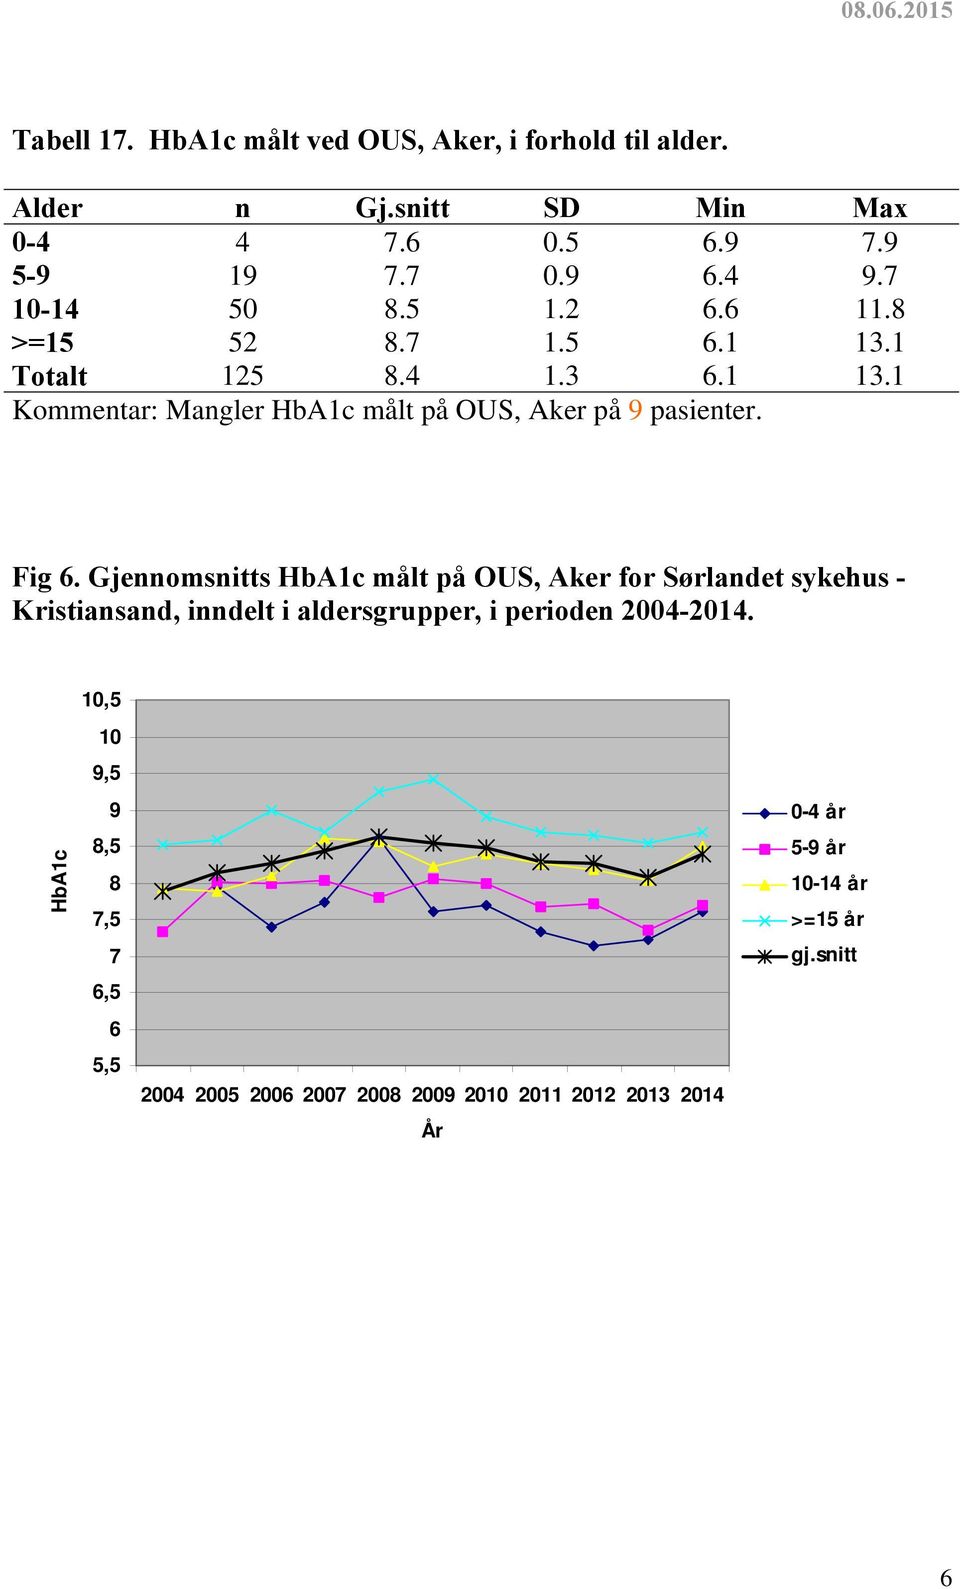 Fig 6. Gjennomsnitts HbA1c målt på OUS, Aker for Sørlandet sykehus - Kristiansand, inndelt i aldersgrupper, i perioden 2004-2014.